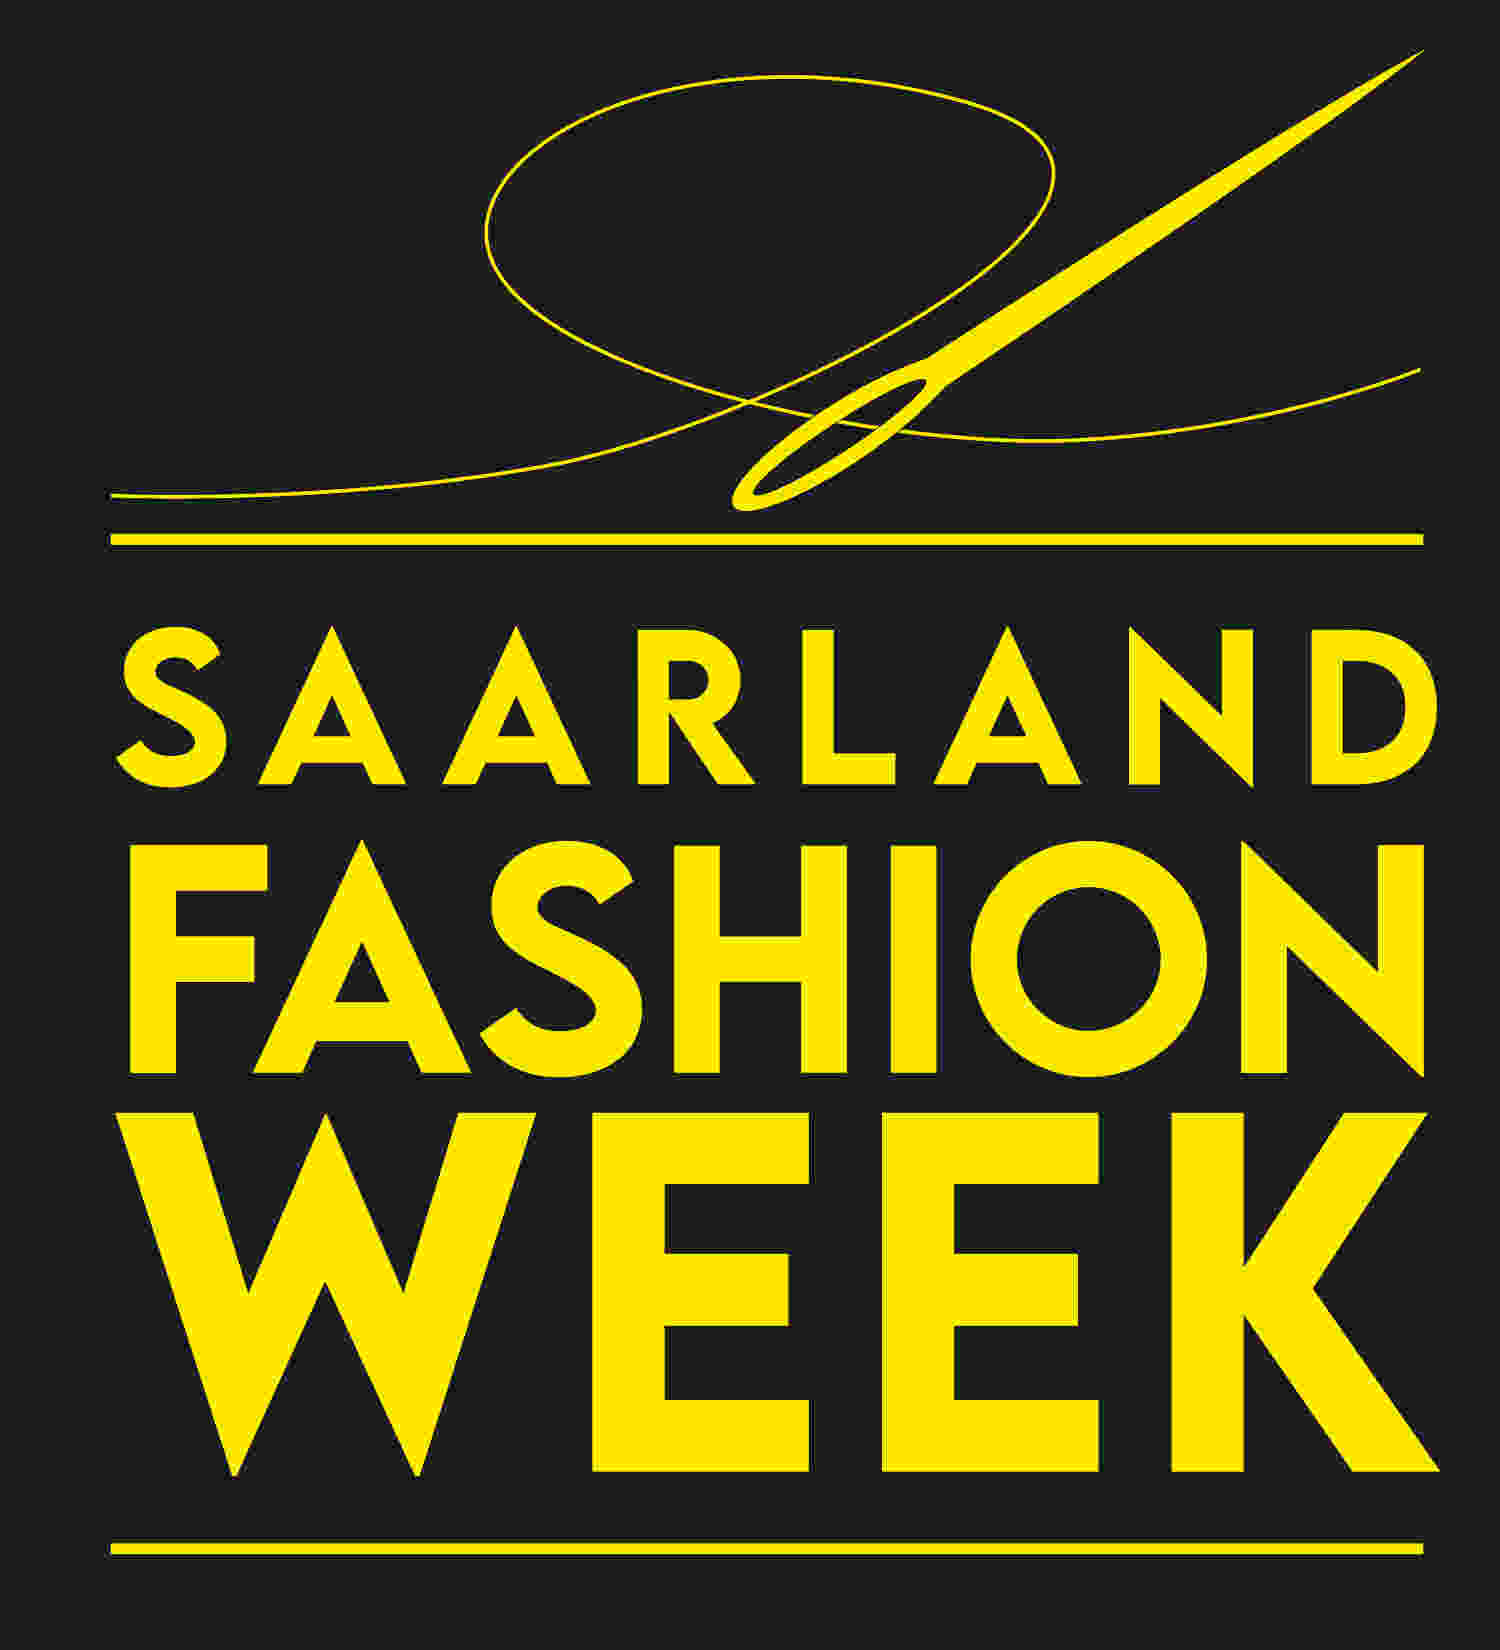 Saarland Fashion Week